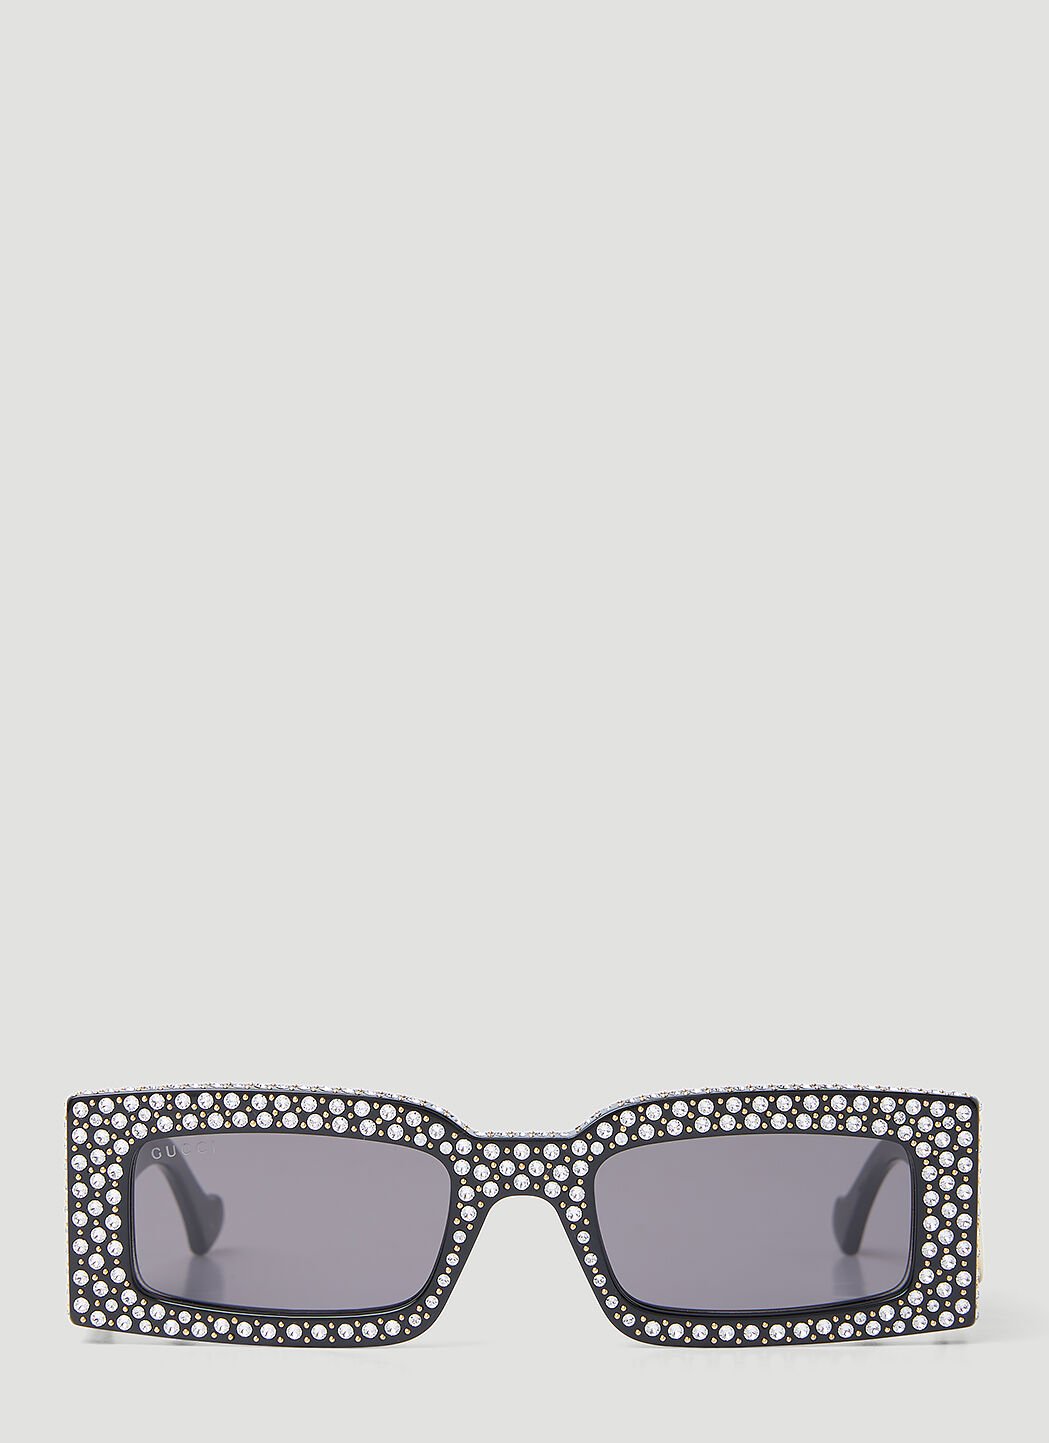 Vivienne Westwood Crystal Embellished Rectangular Sunglasses Black vvw0254048